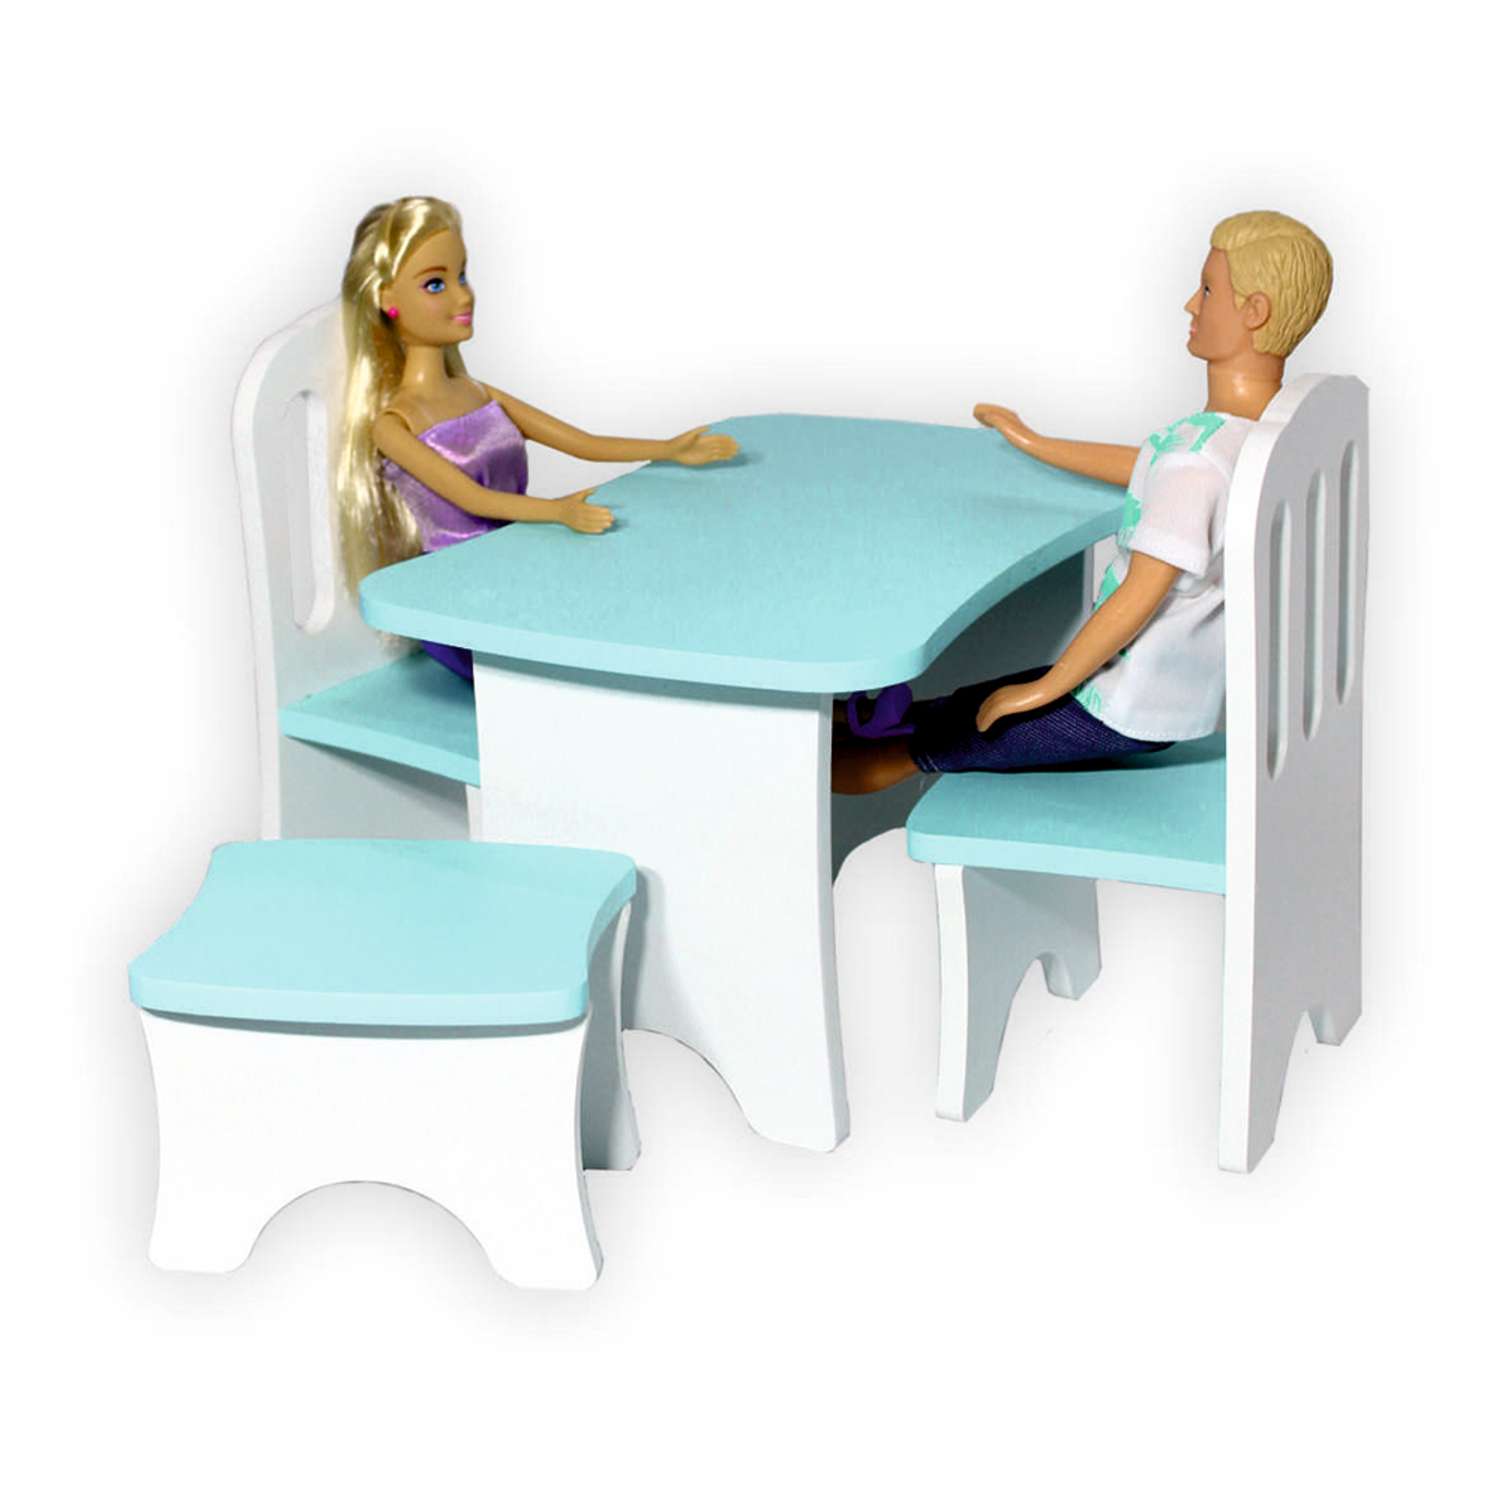 Набор деревянной мебели ViromToys для кукол голубой Мд0021 - фото 2